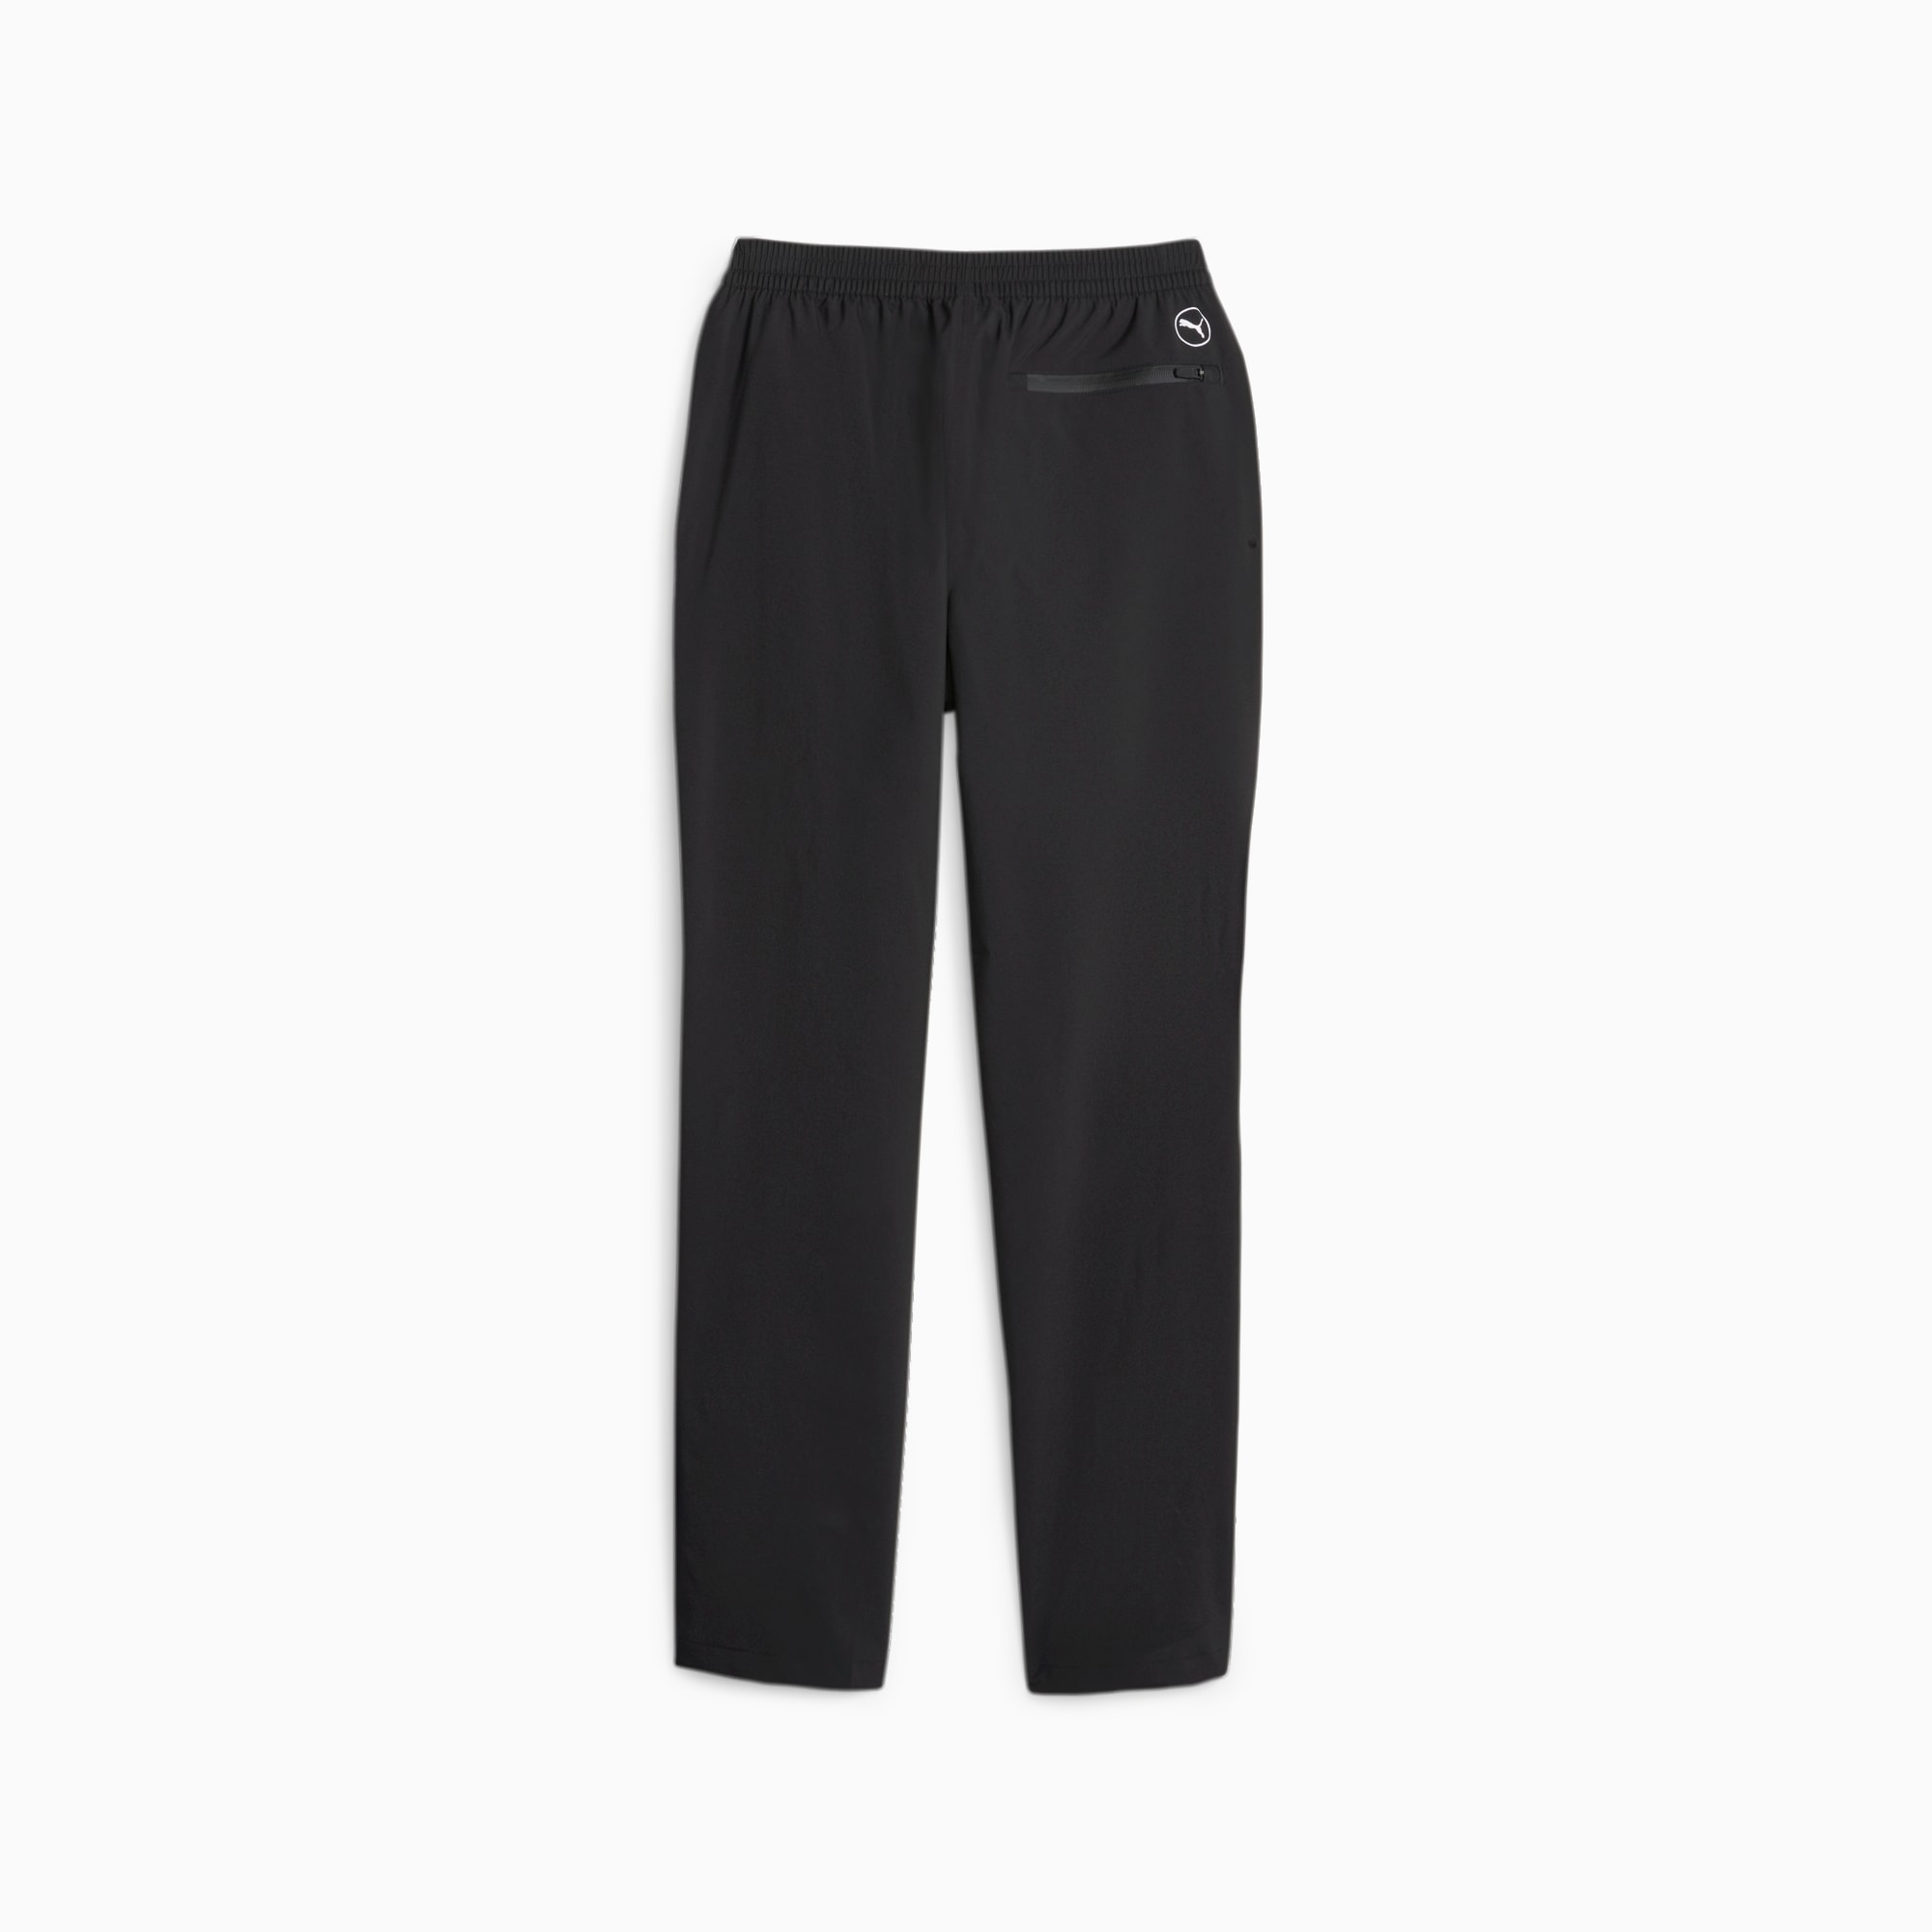 PUMA Drylbl Men's Rain Pants, Black, Size S/L, Clothing